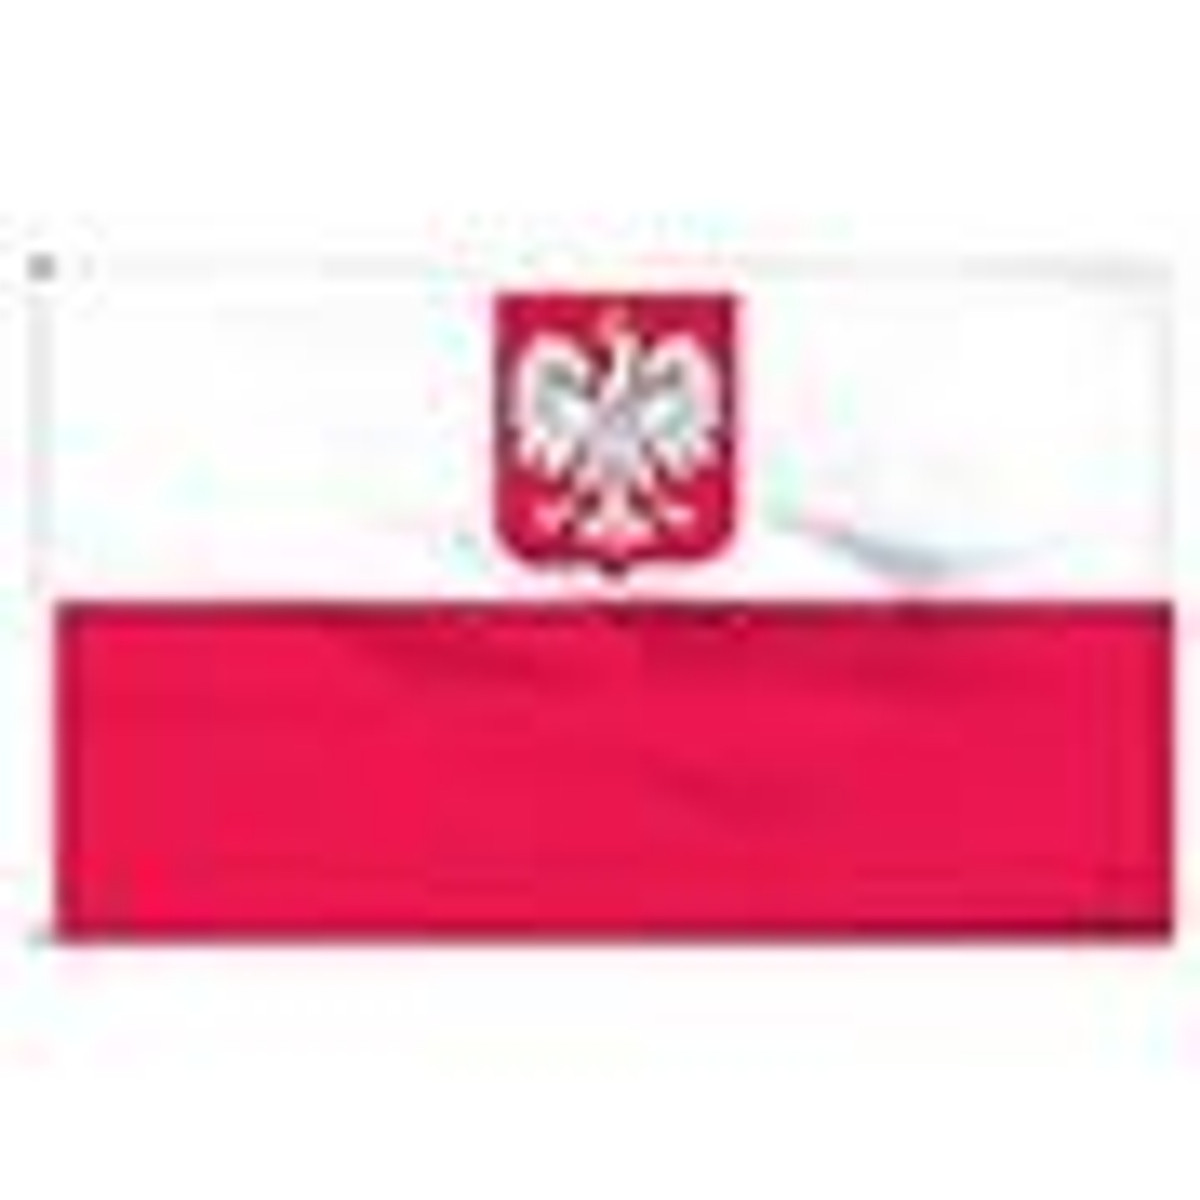 Poland State Flag & Civil Ensign